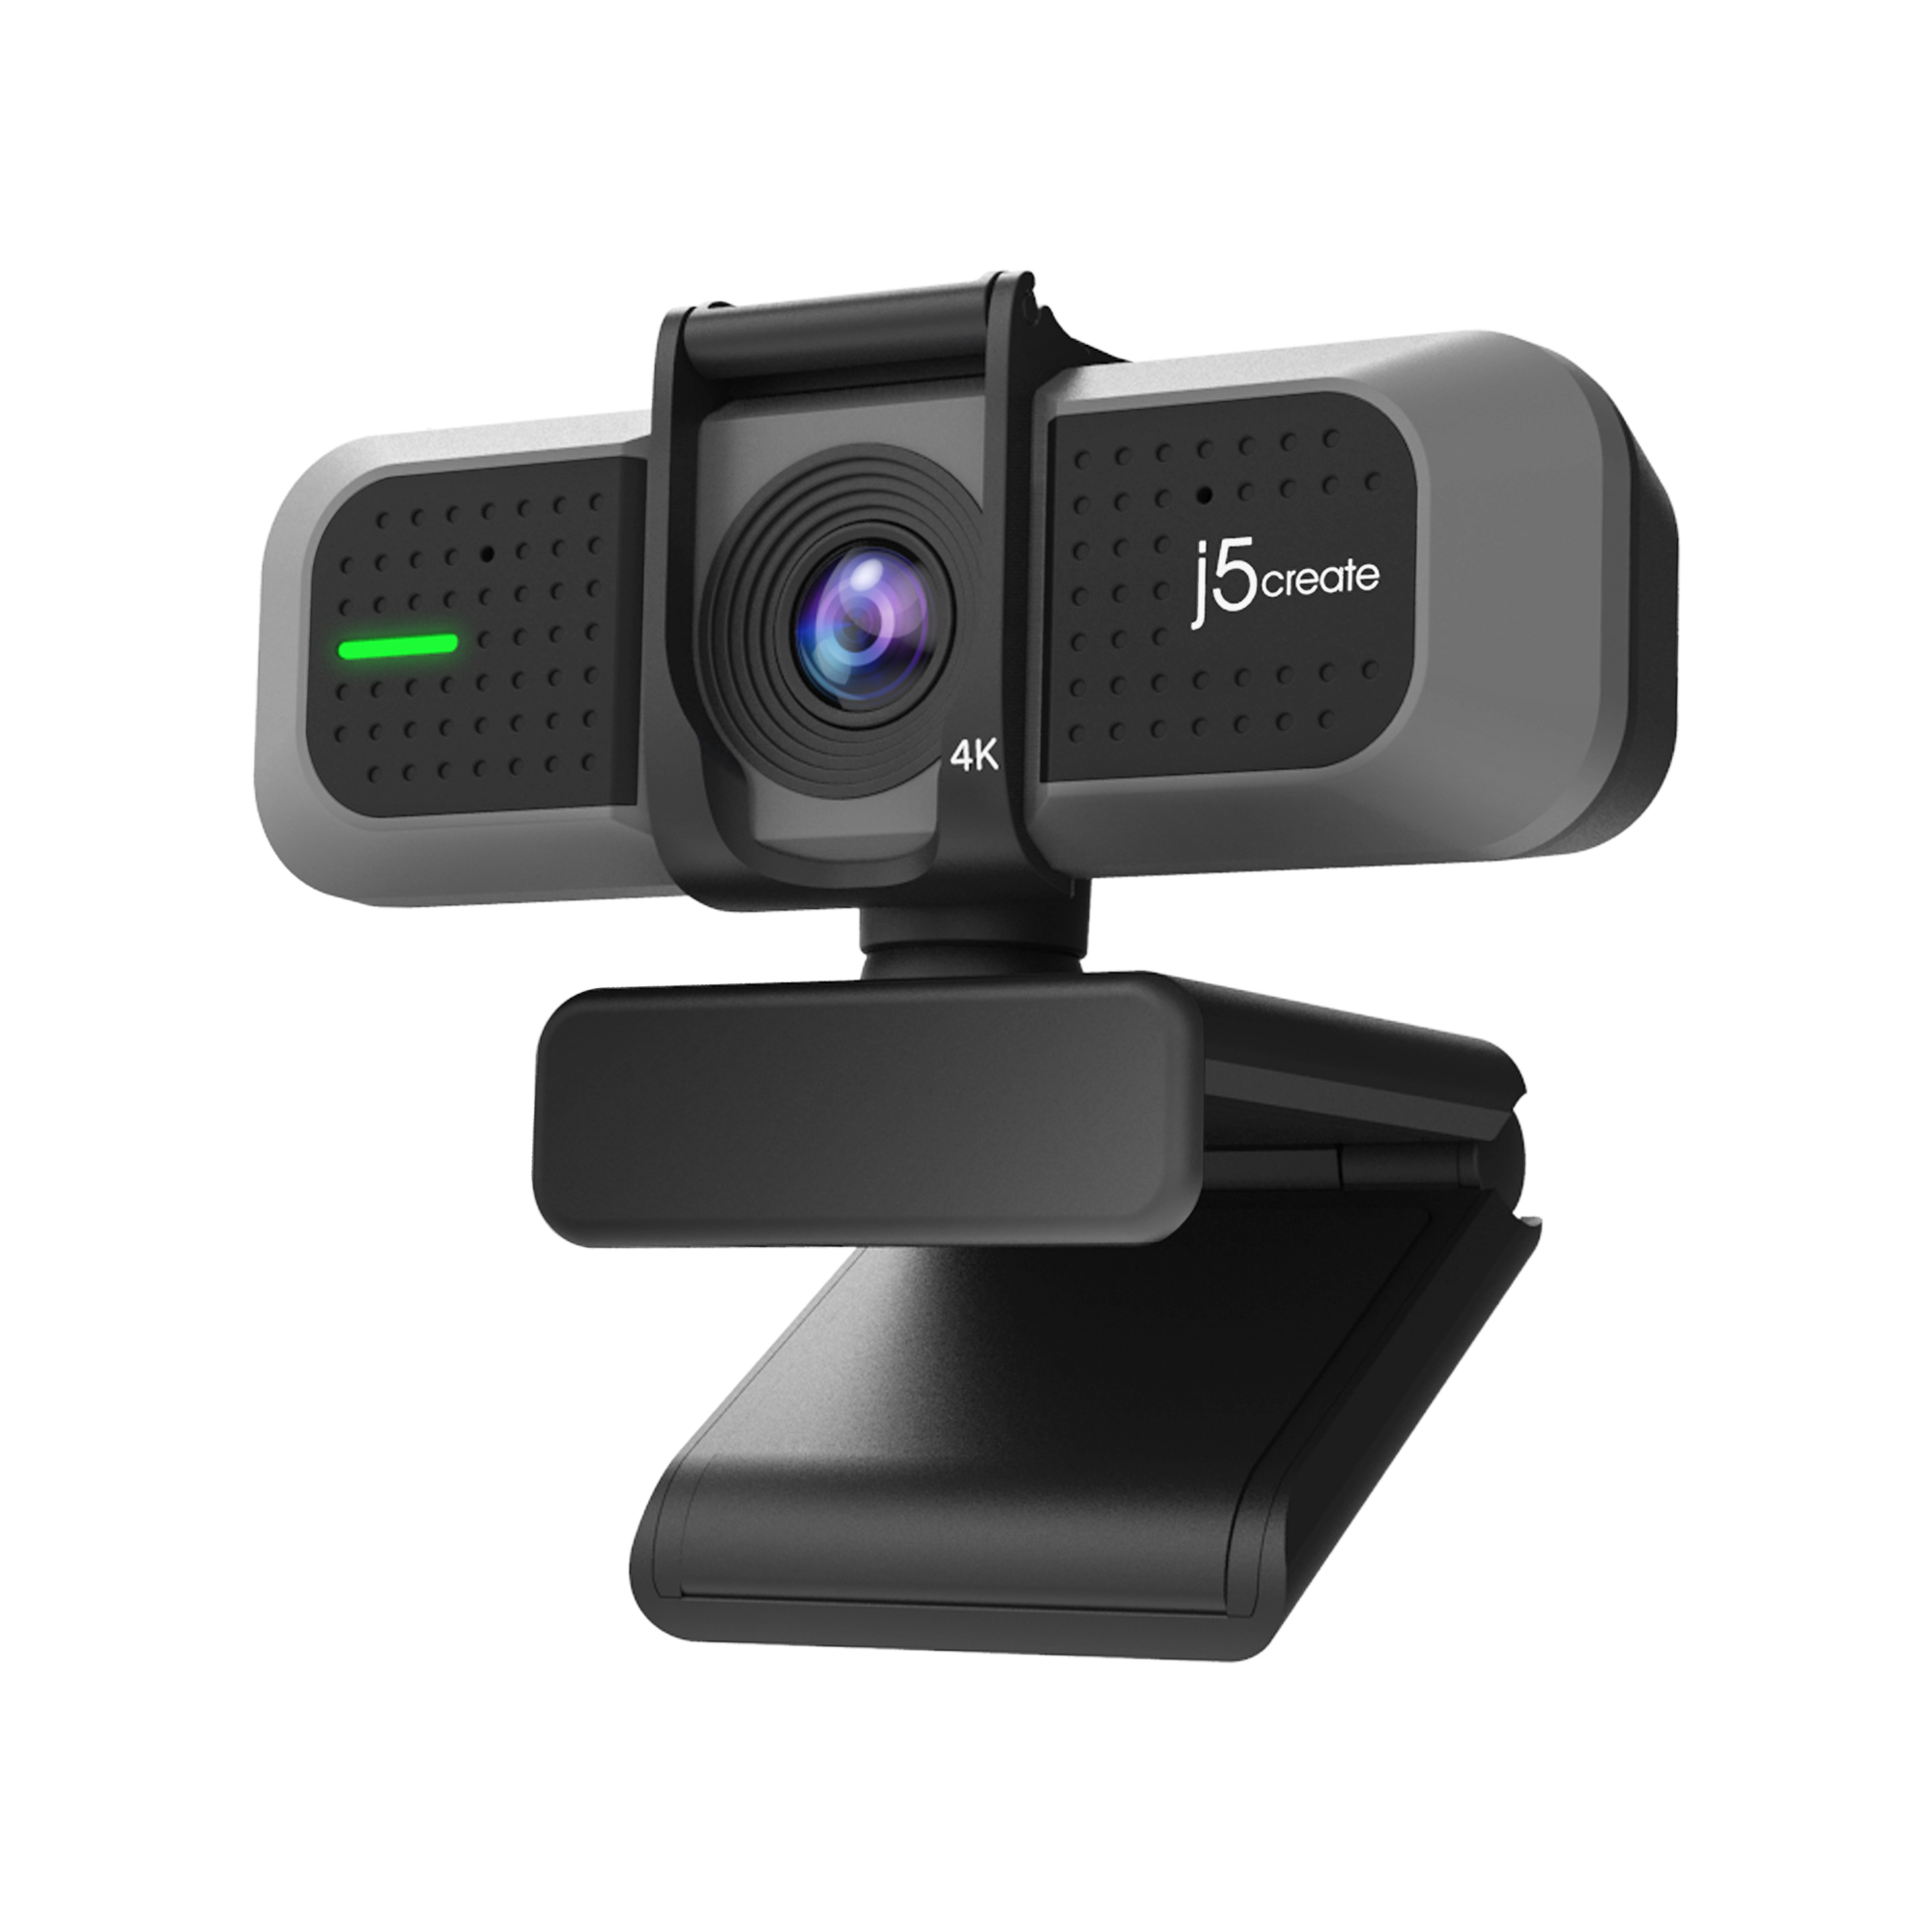 HD JVU430-N Ultra Webcam J5CREATE 4K USB